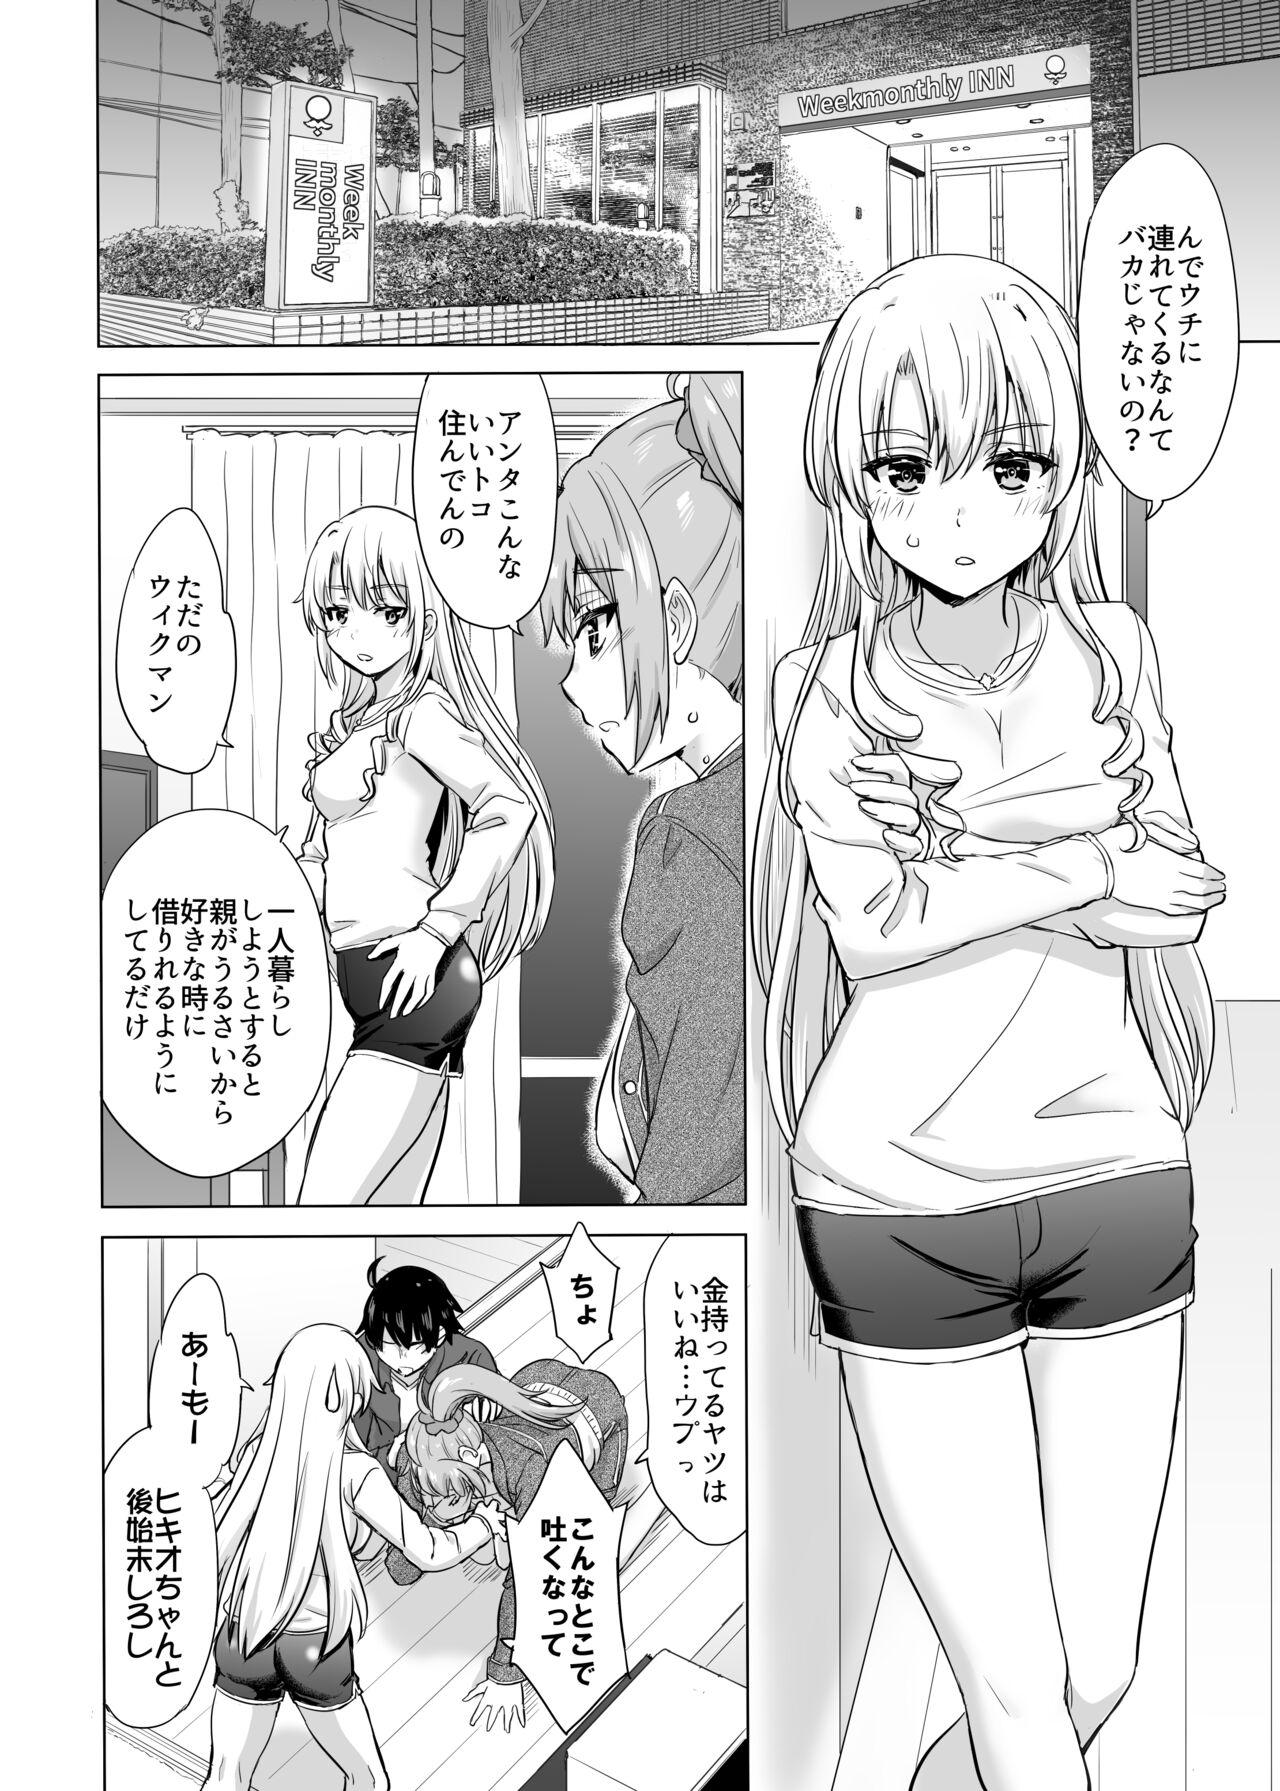 Camshow Ashi-san Saki Saki Manga - Yahari ore no seishun love come wa machigatteiru Rope - Picture 2